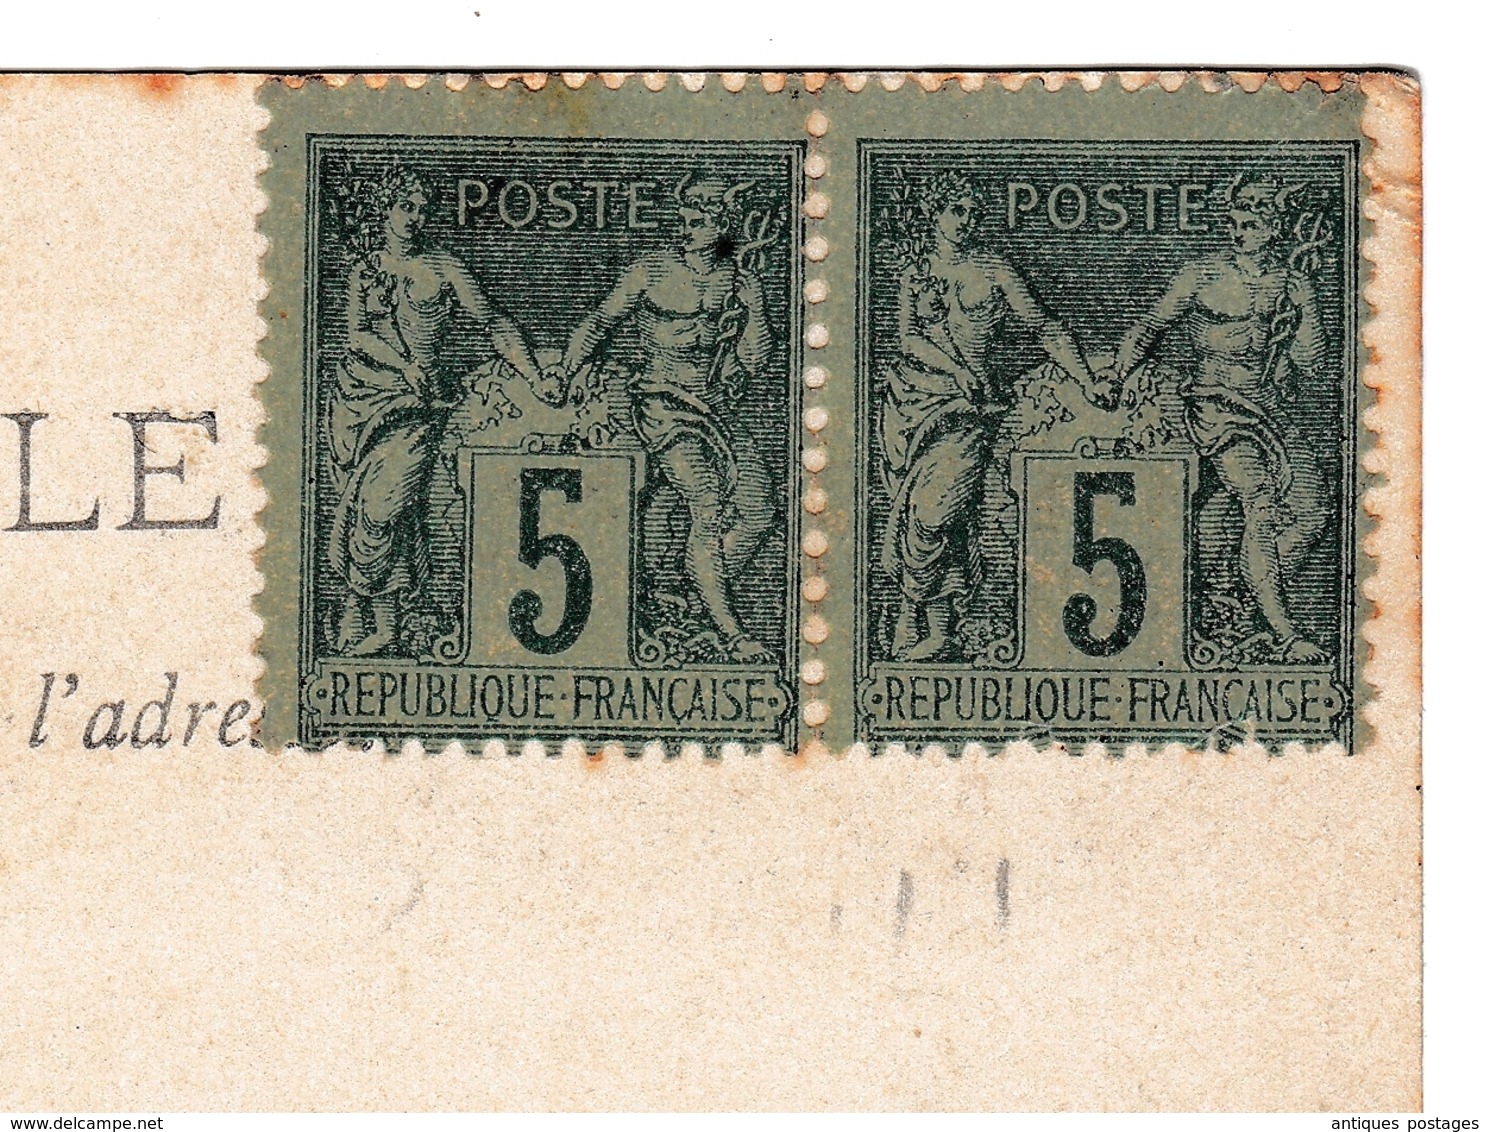 Carte Postale Montpellier Arc De Triomphe Hérault Montdidier Somme 1902 Paire Type Sage 5 Centimes - 1900-29 Blanc